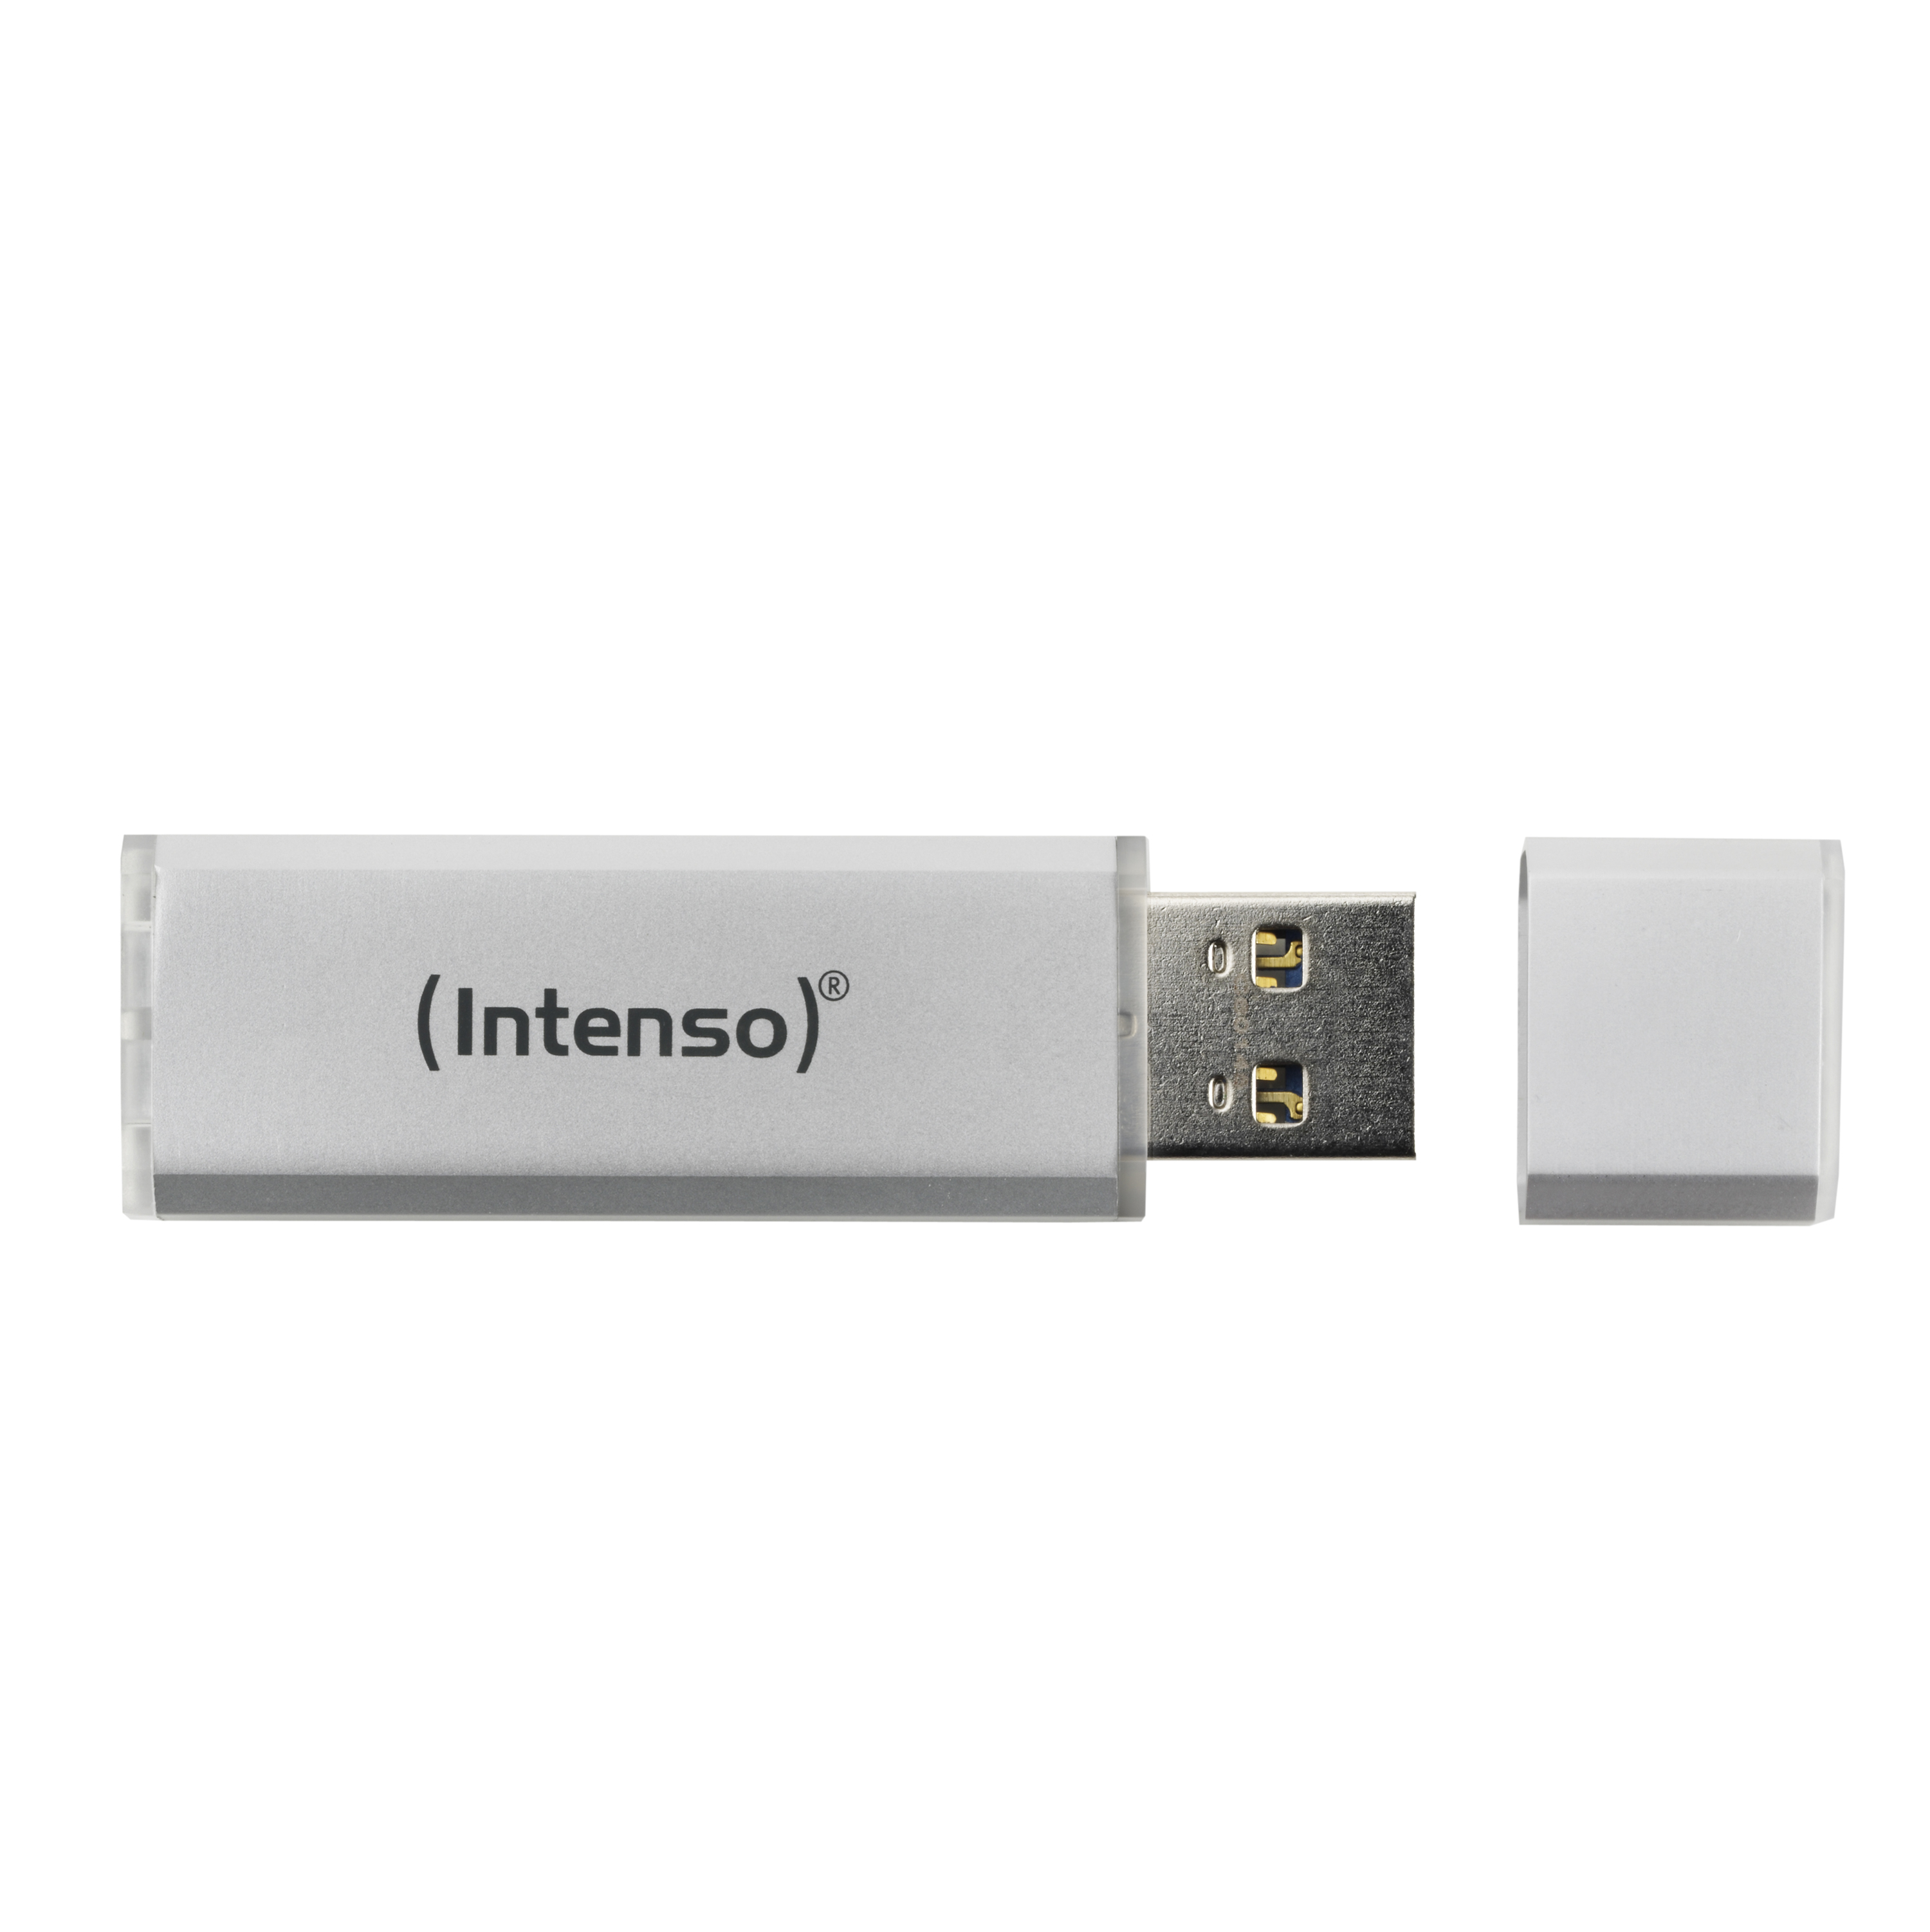 INTENSO Ultra Line USB-Stick, 256 Silber GB, 70 MB/s